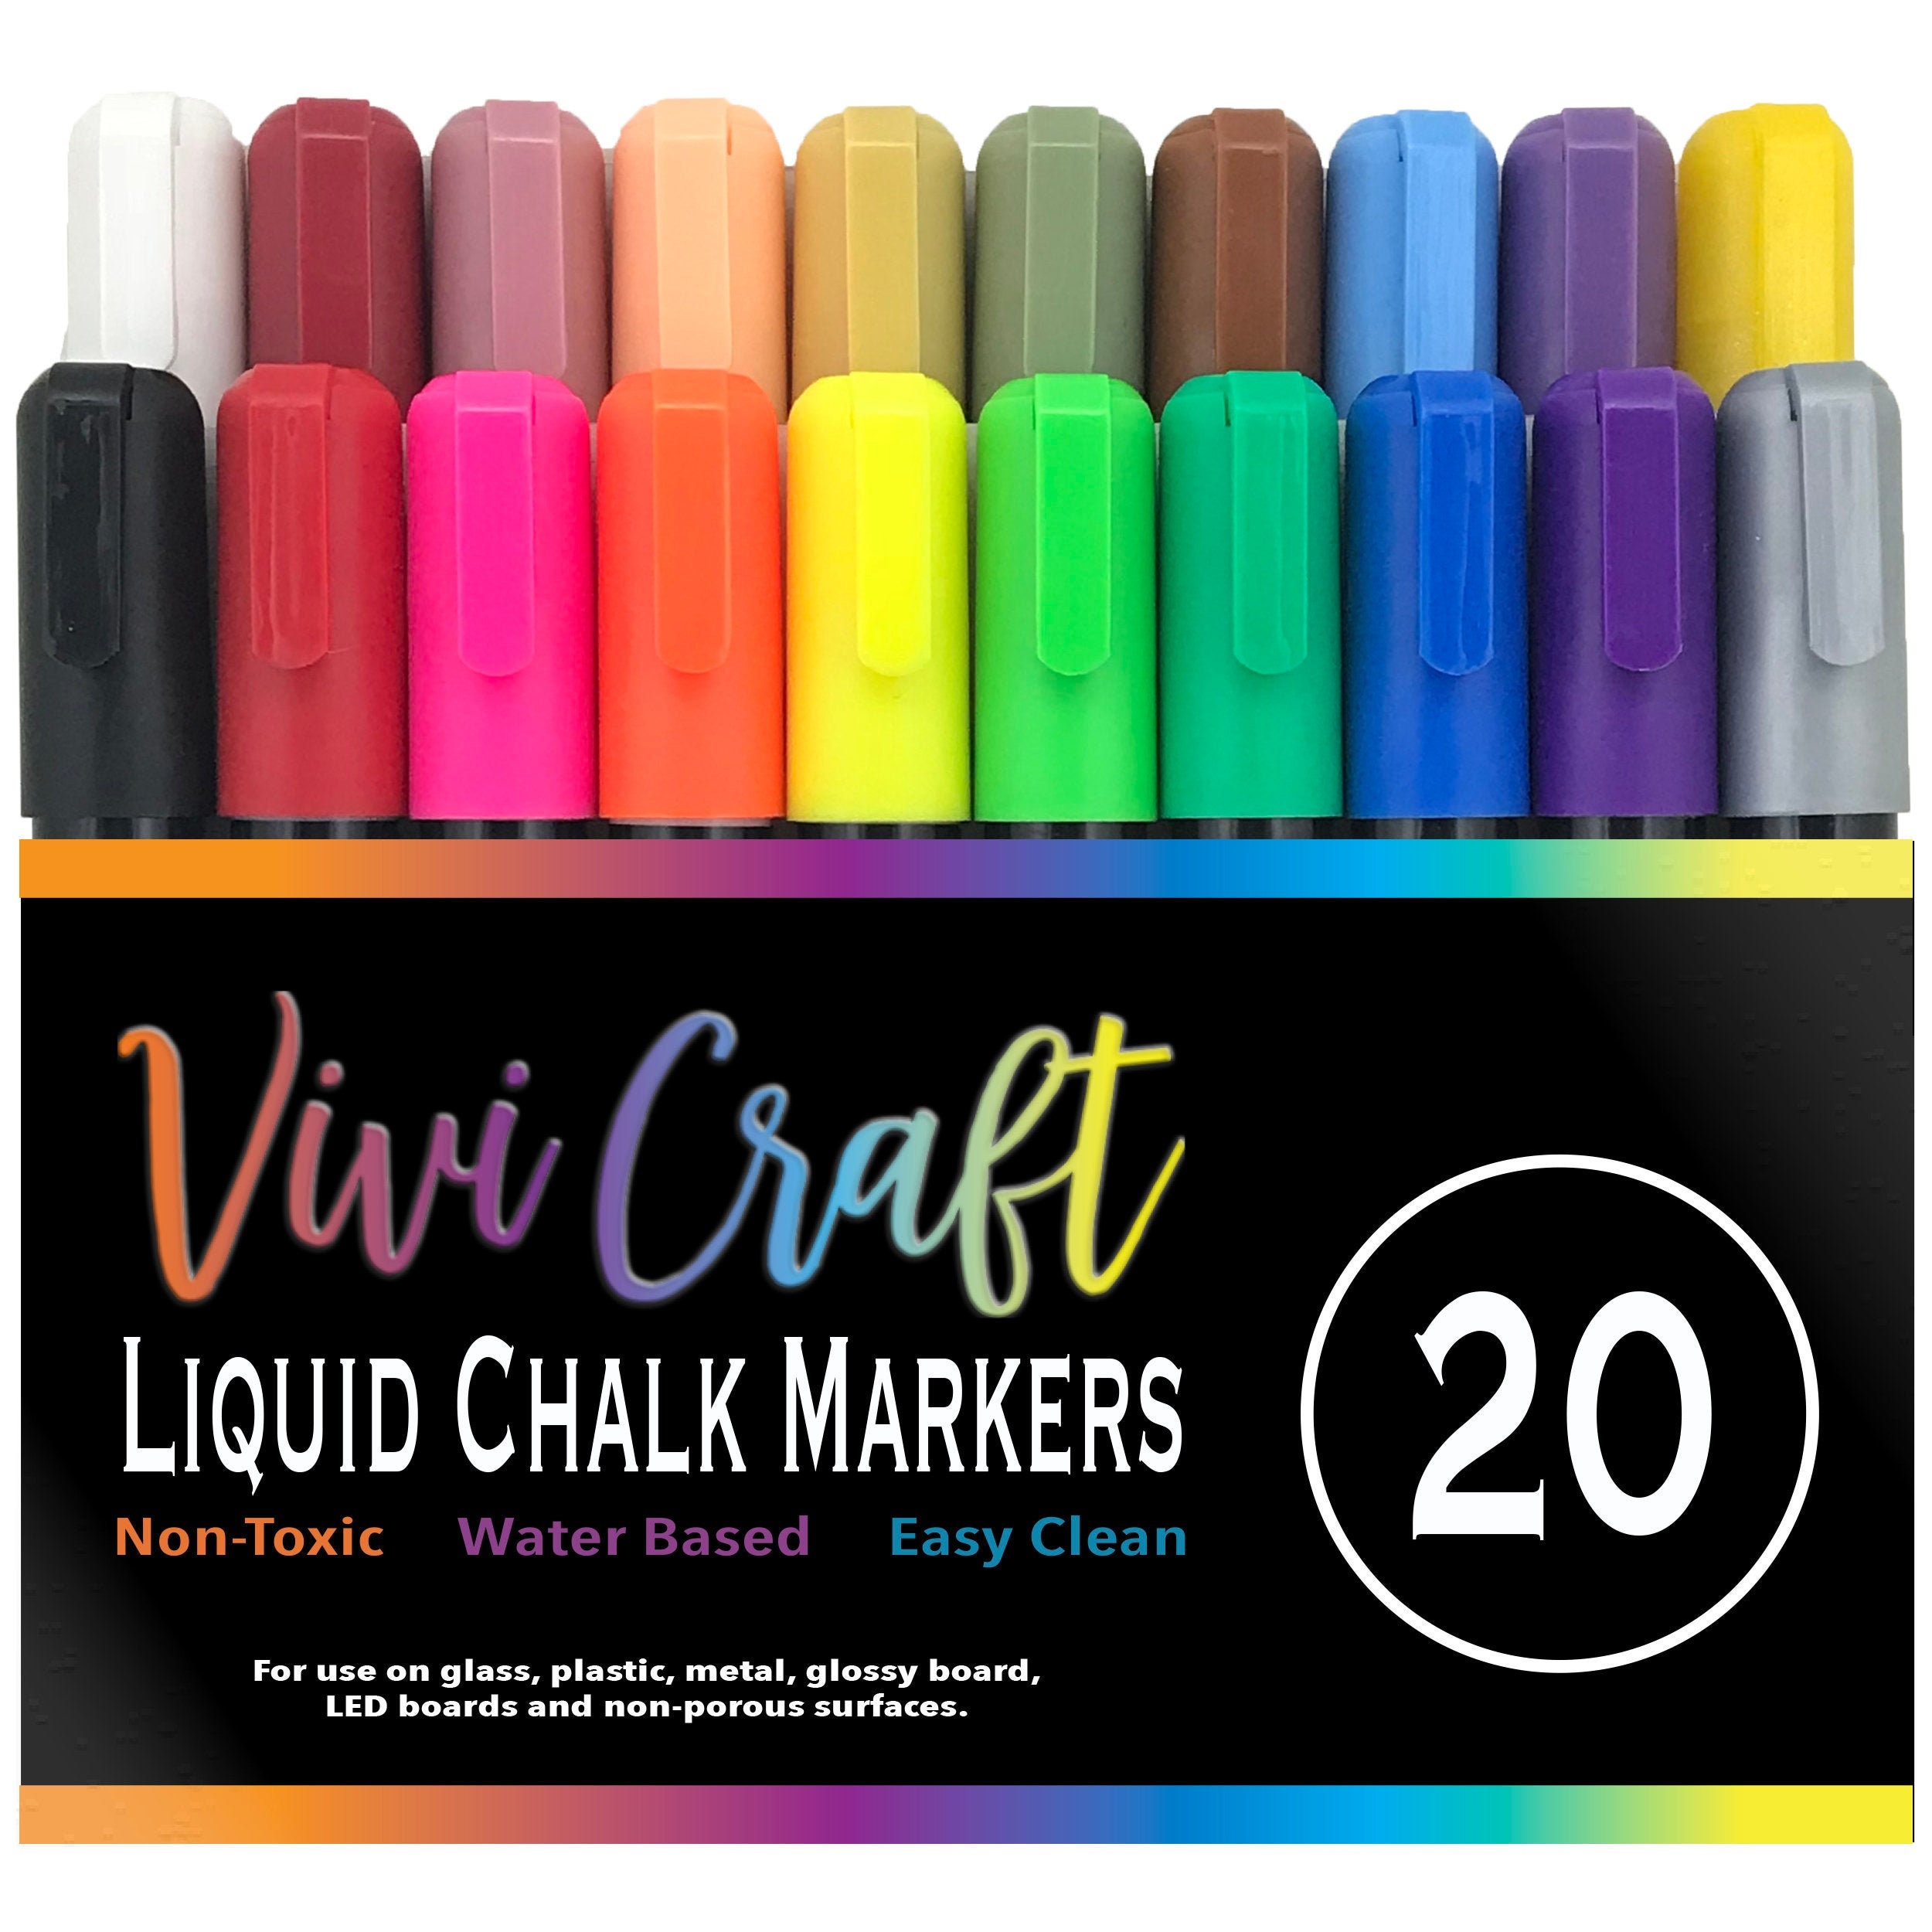 10 Count Seasonal Colors Liquid Chalk Markers by Loddie Doddie 